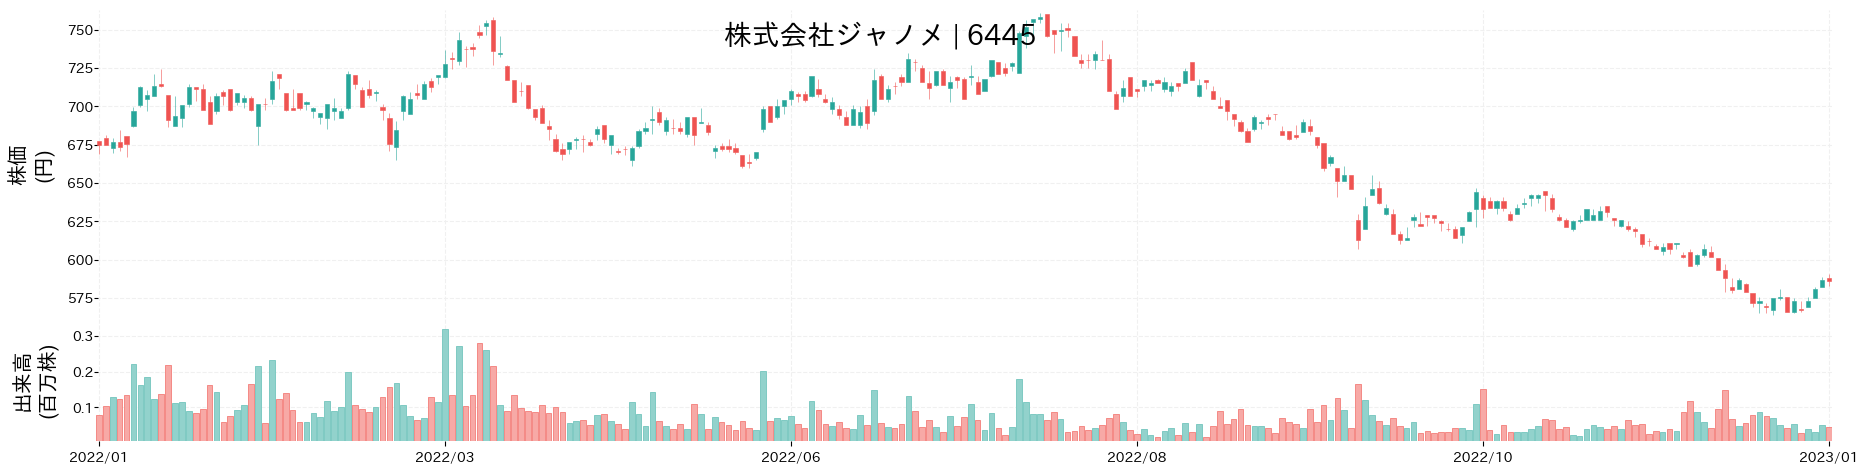 ジャノメの株価推移(2022)